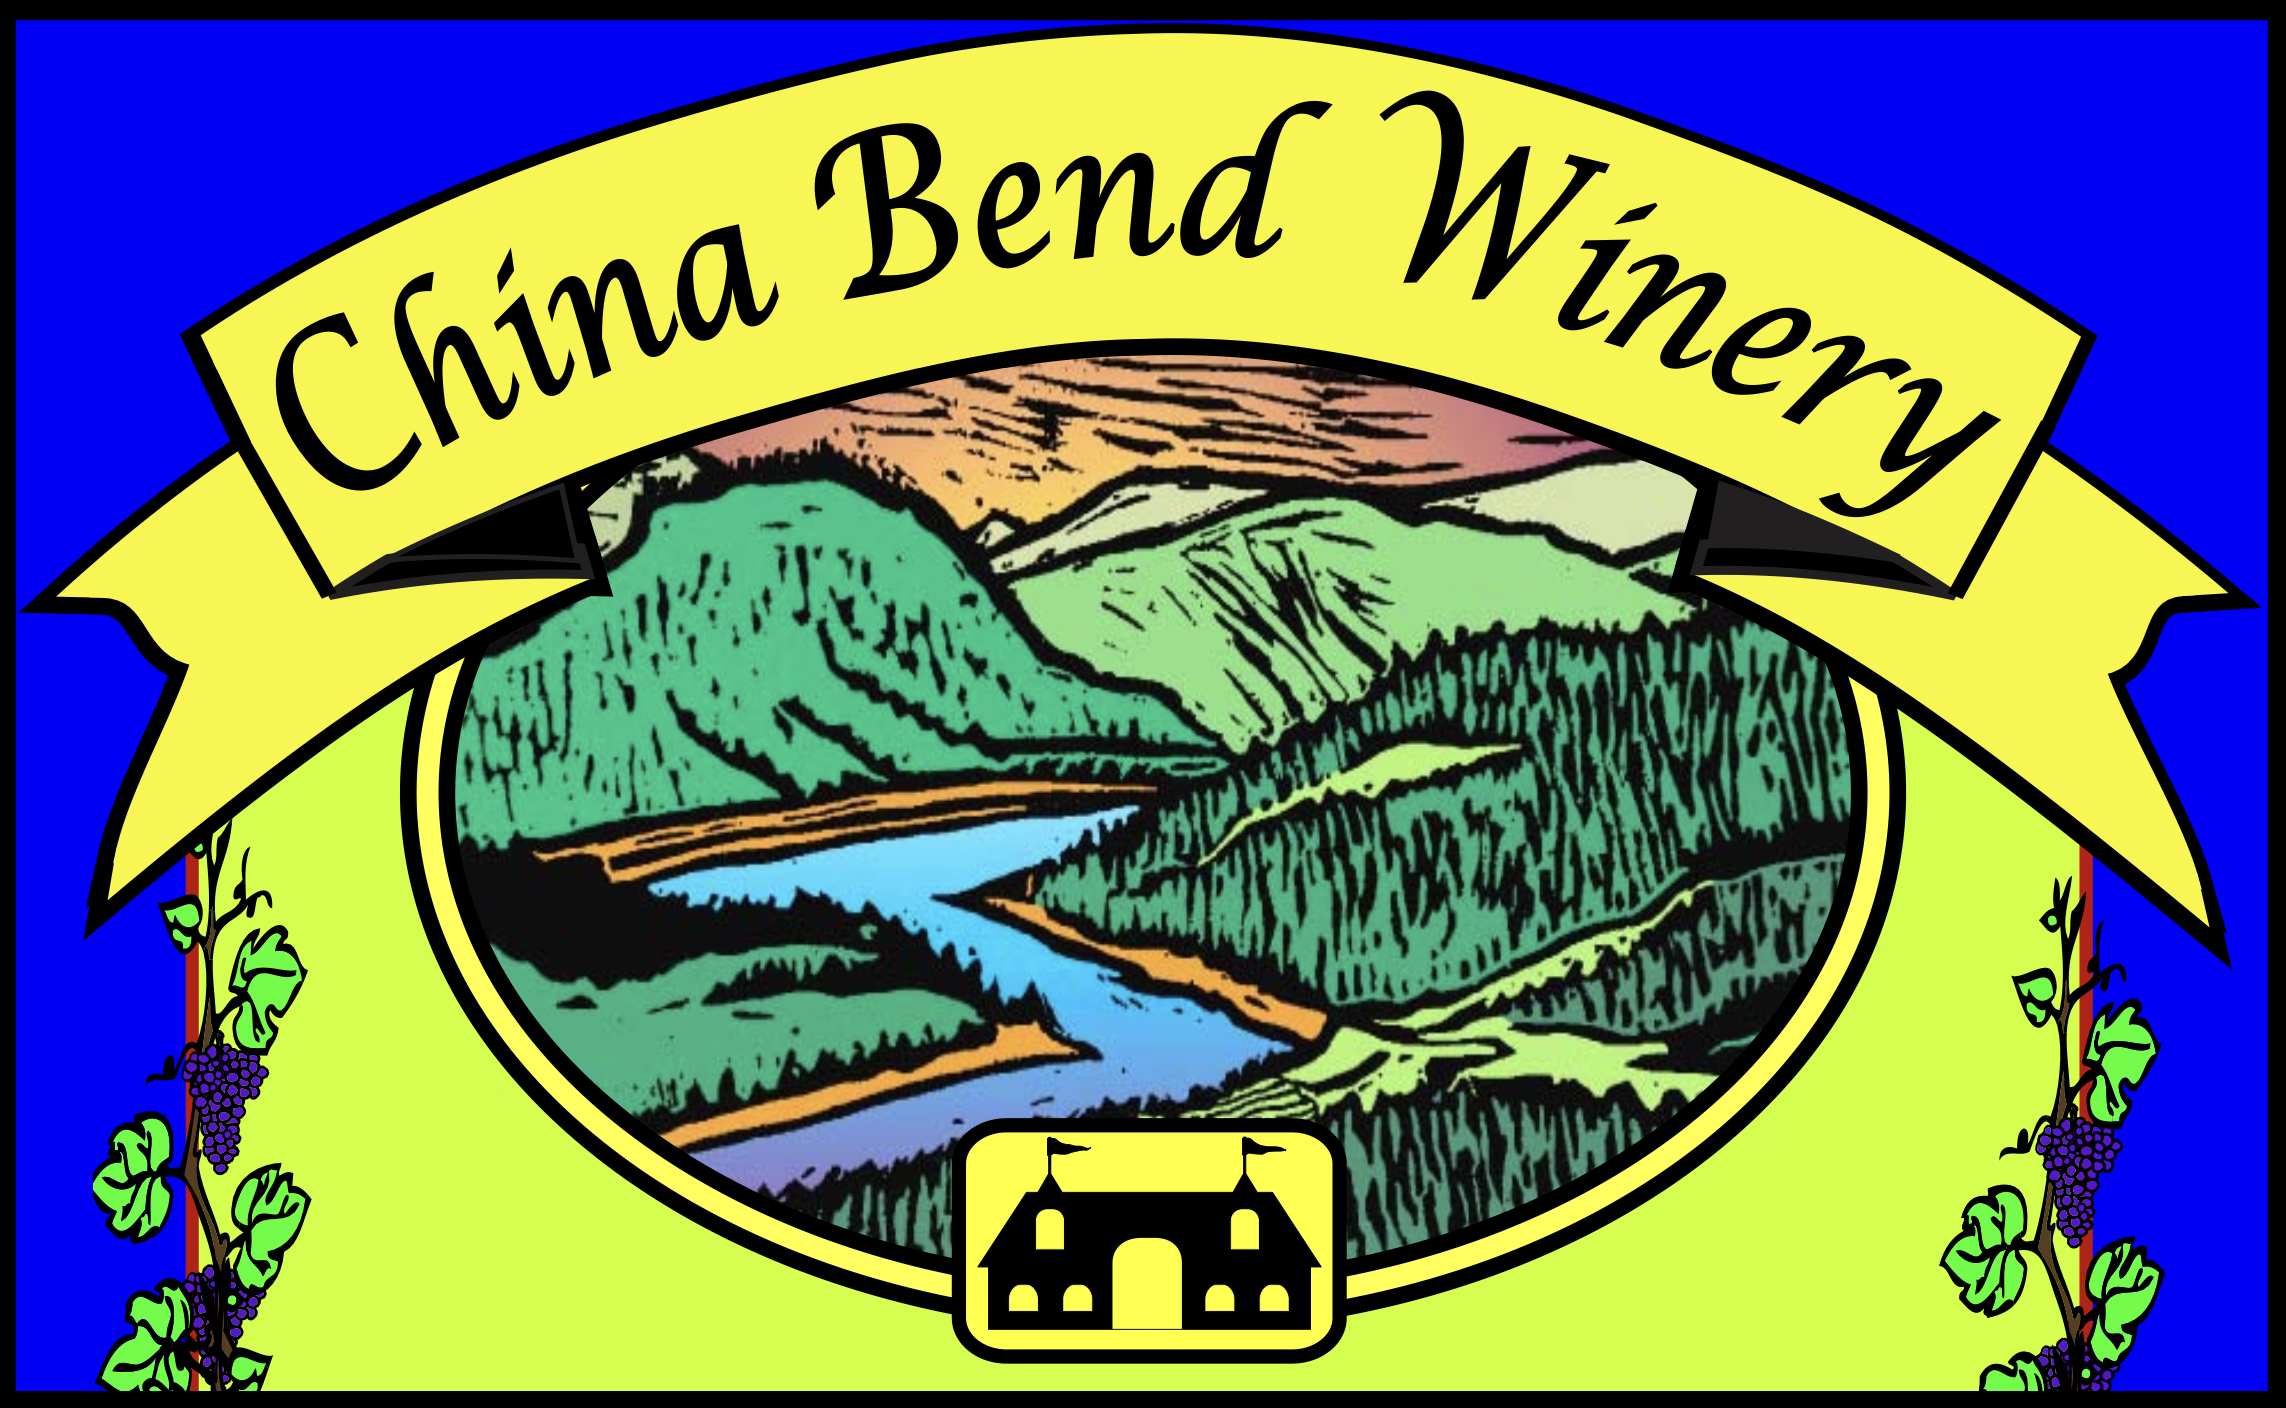 China Bend Winery